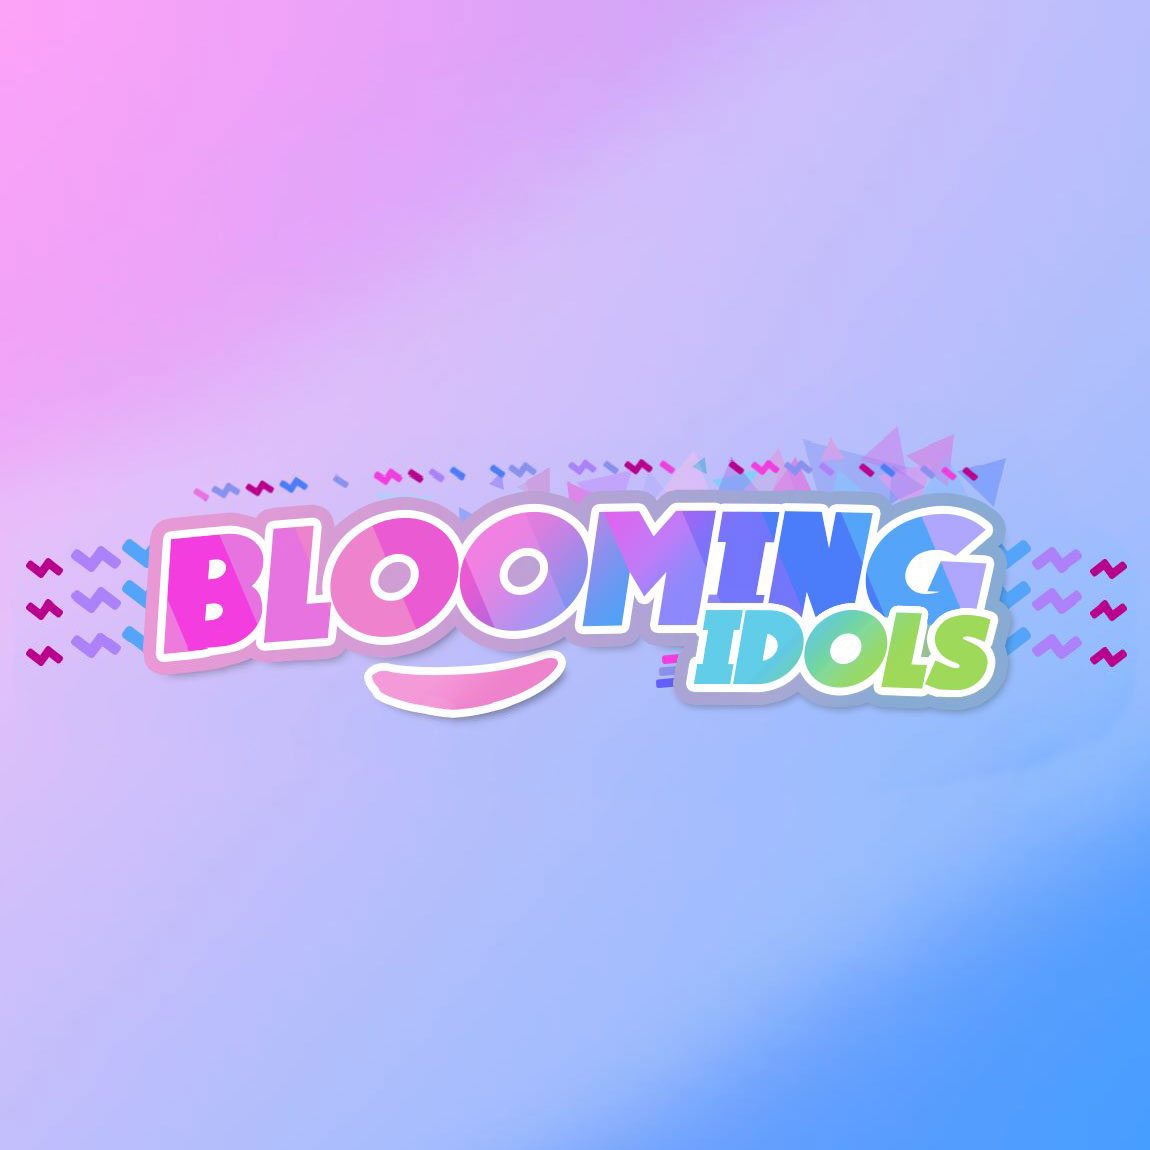 Blooming Idols